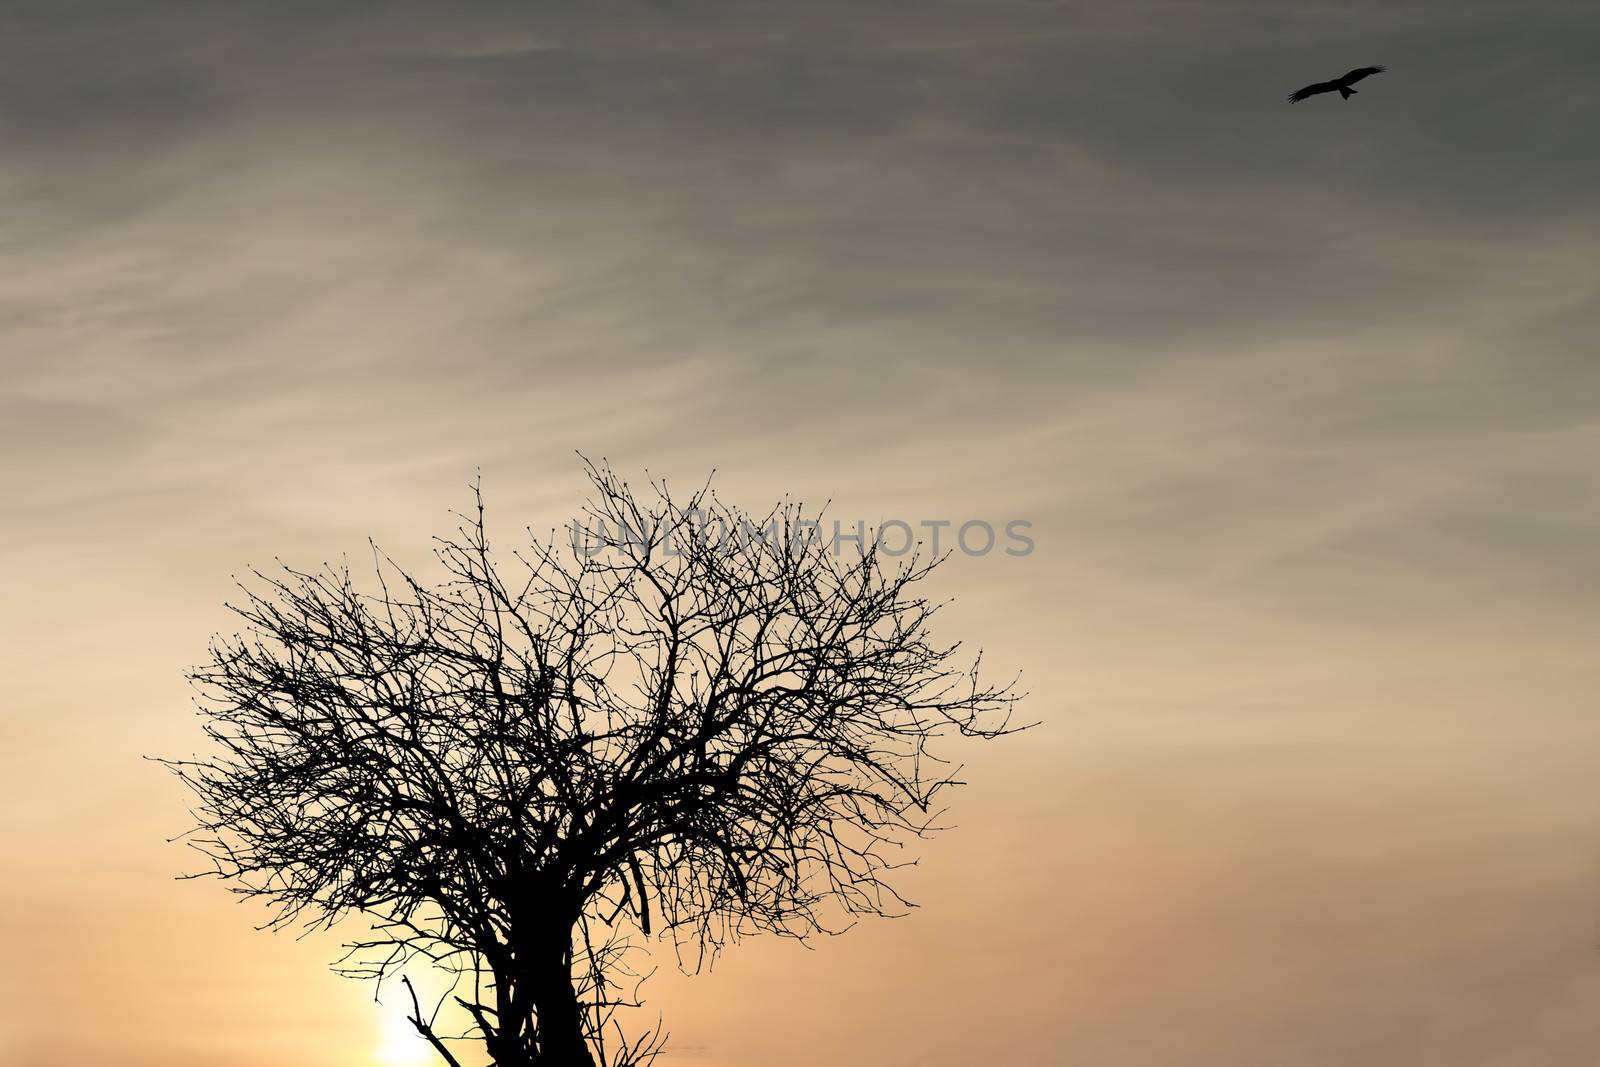 Tree and bird by Ohotnik